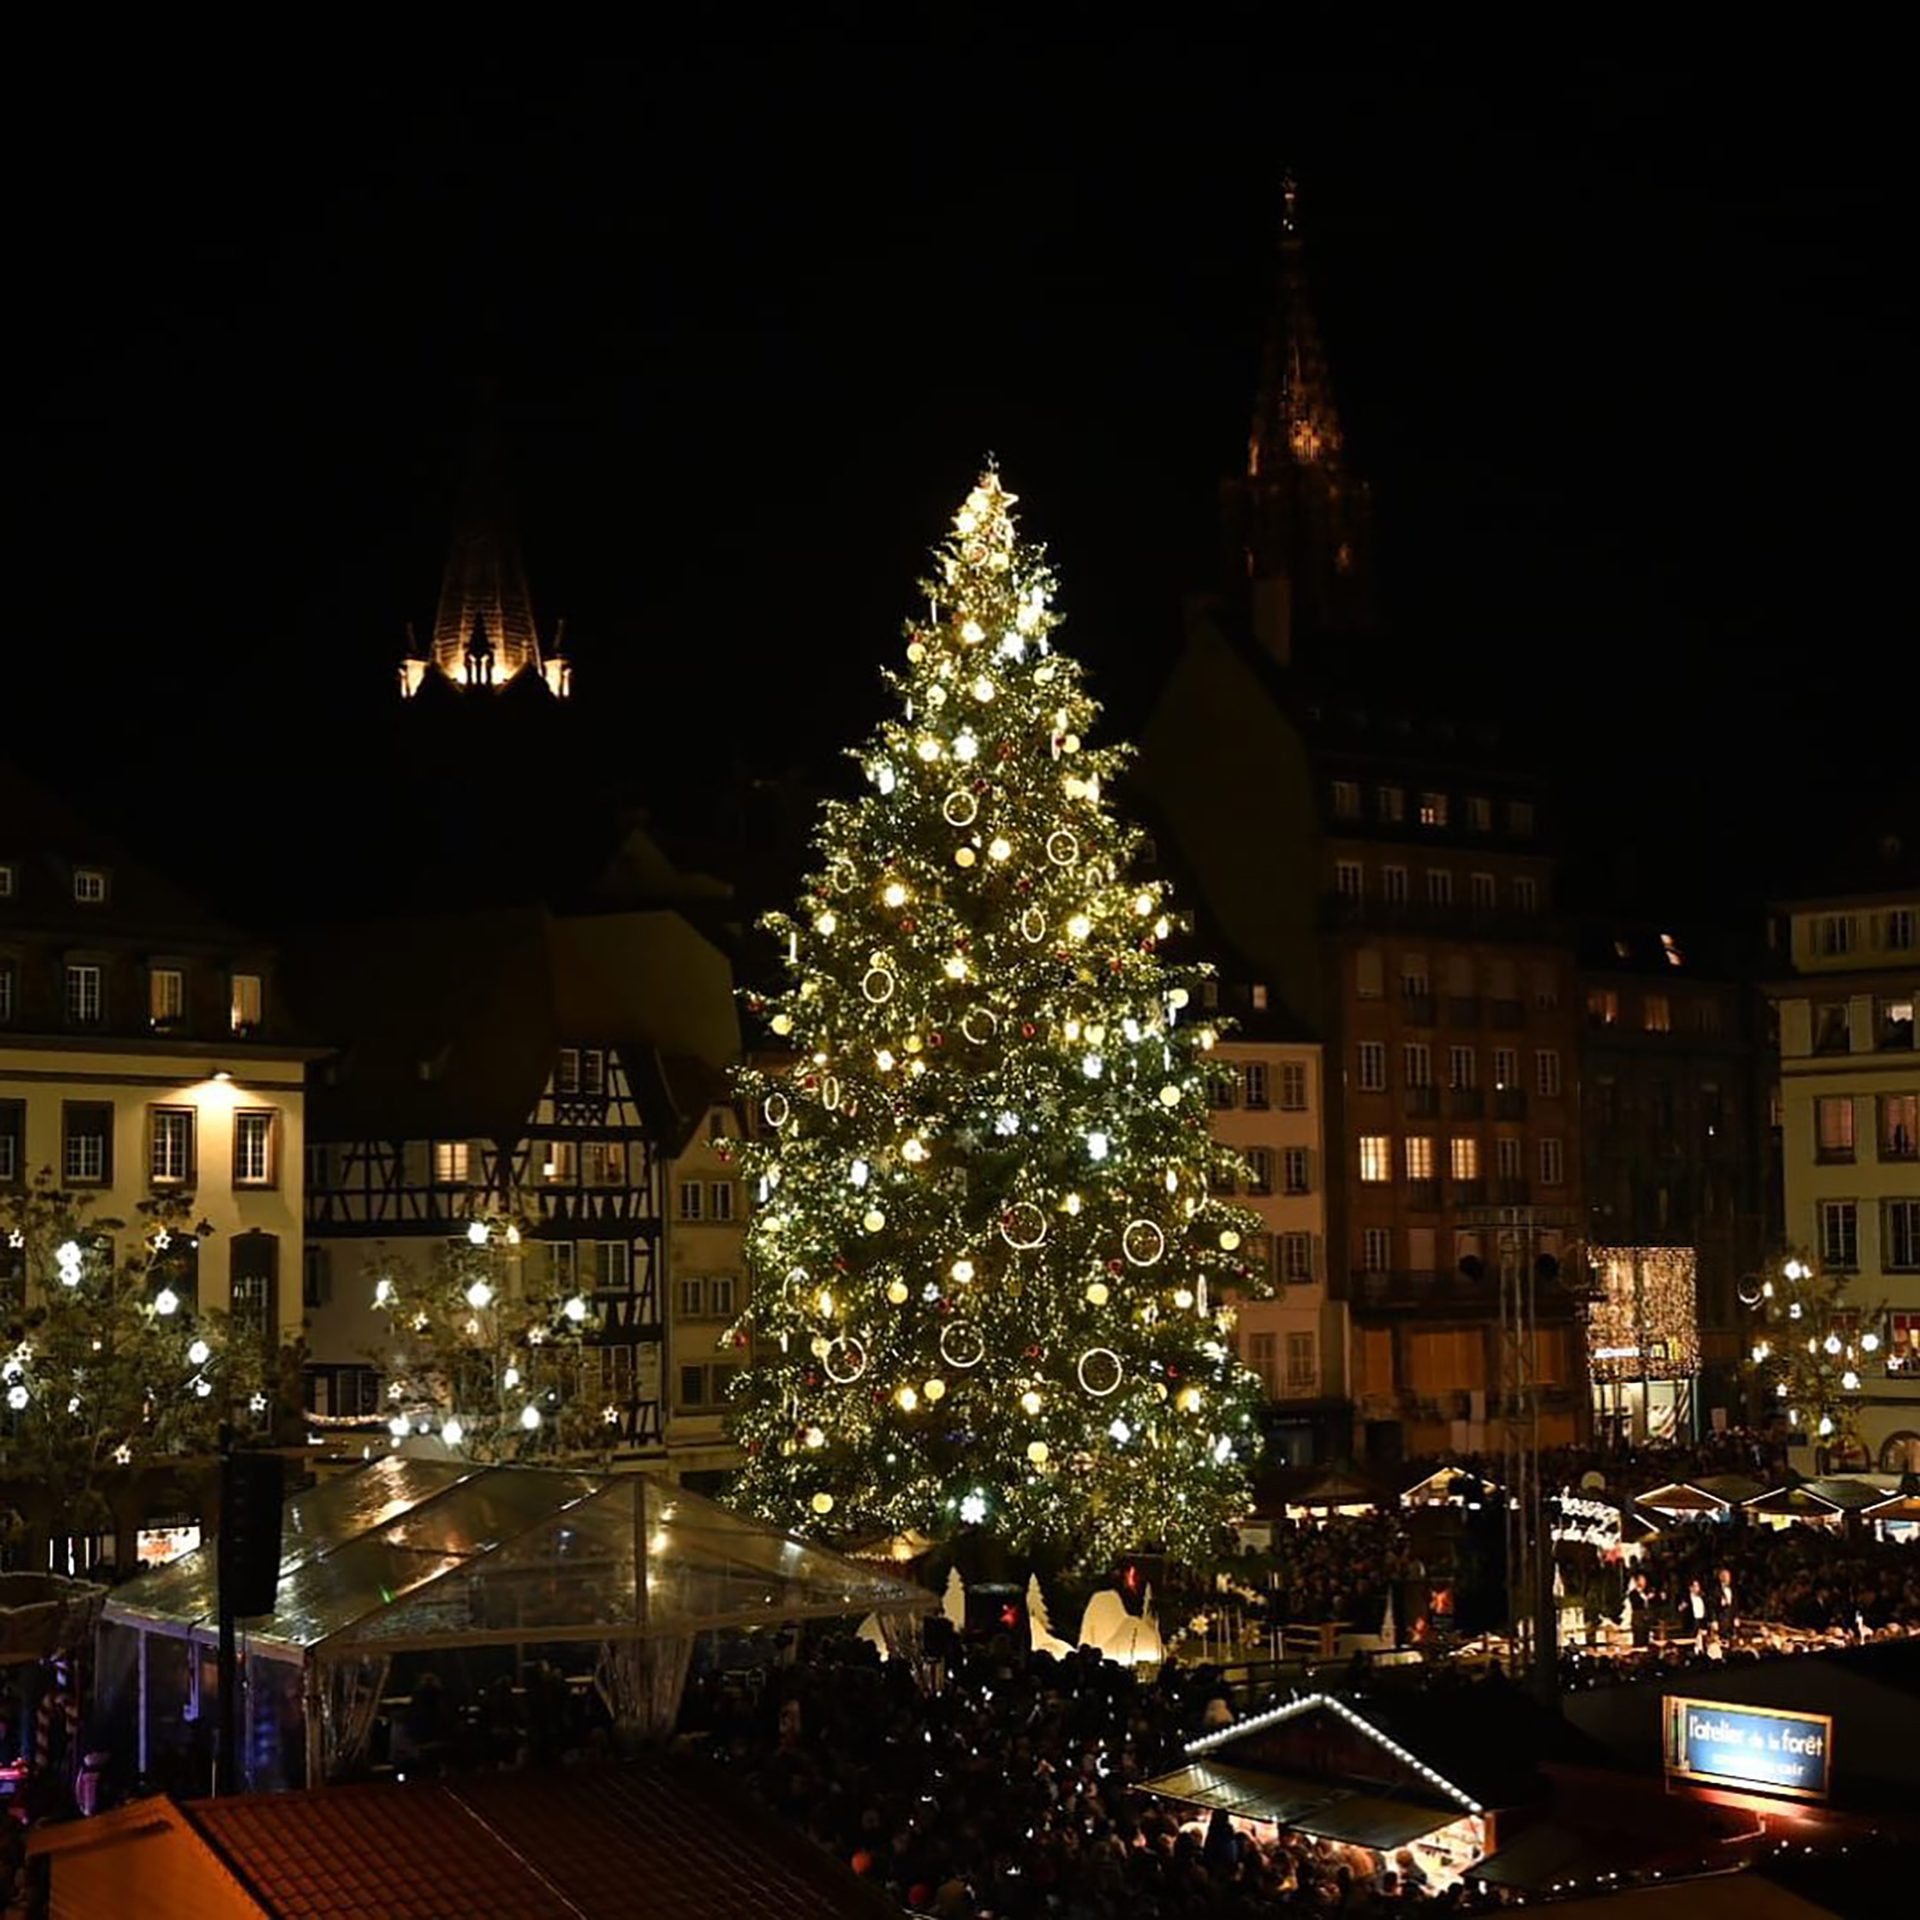 El árbol se convierte en el centro del Mercado de Navidad, también conocido como Christkindlsmärik, el más popular de Francia (Fuente: Oficina de turismo de Estrasburgo, Francia)